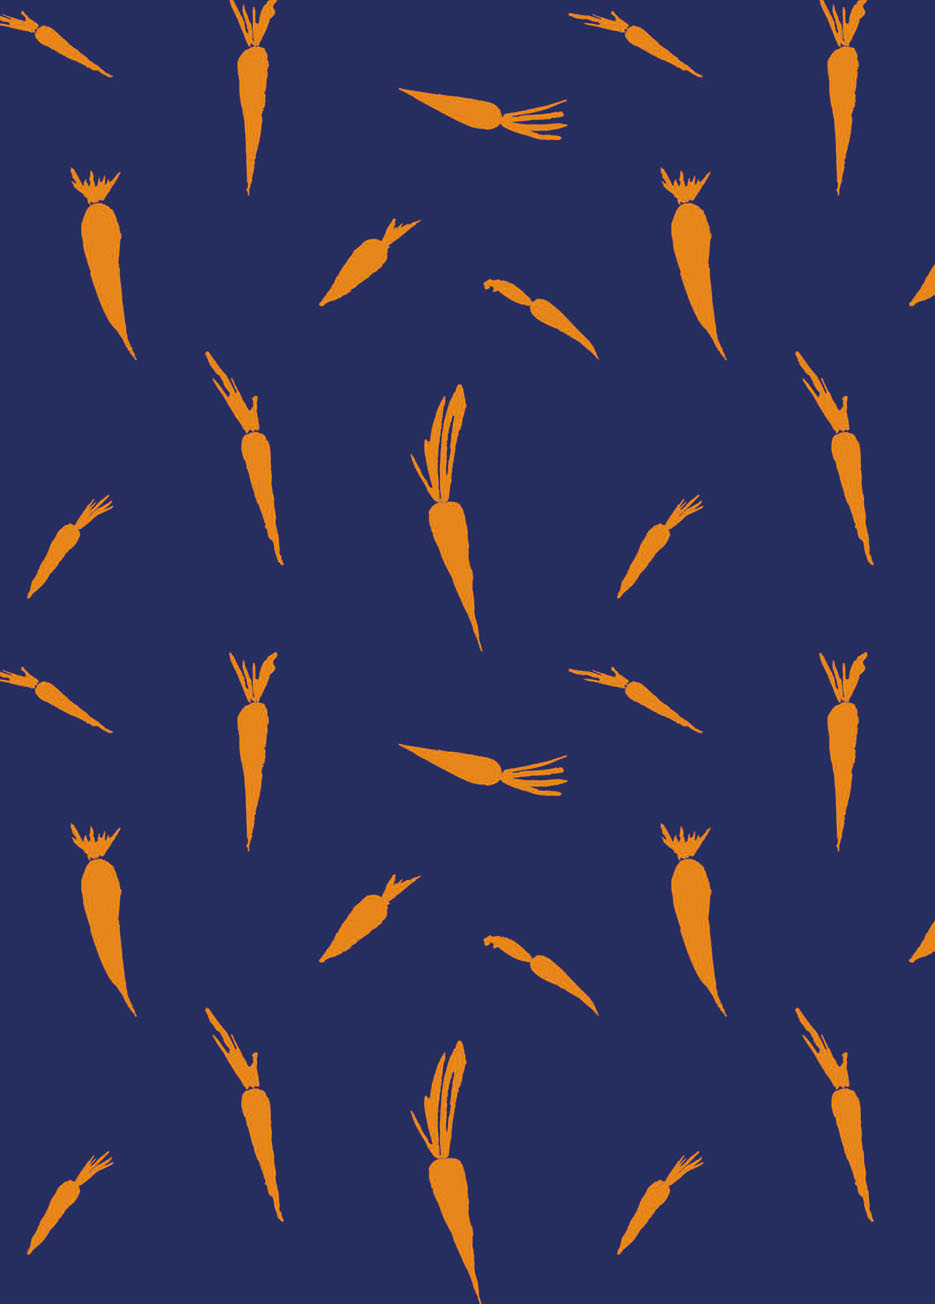 Zdjęcie prezentujące wzór do nadruku na tkaniny i dzianiny z pomarańczowymi marchewkami na granatowym tle